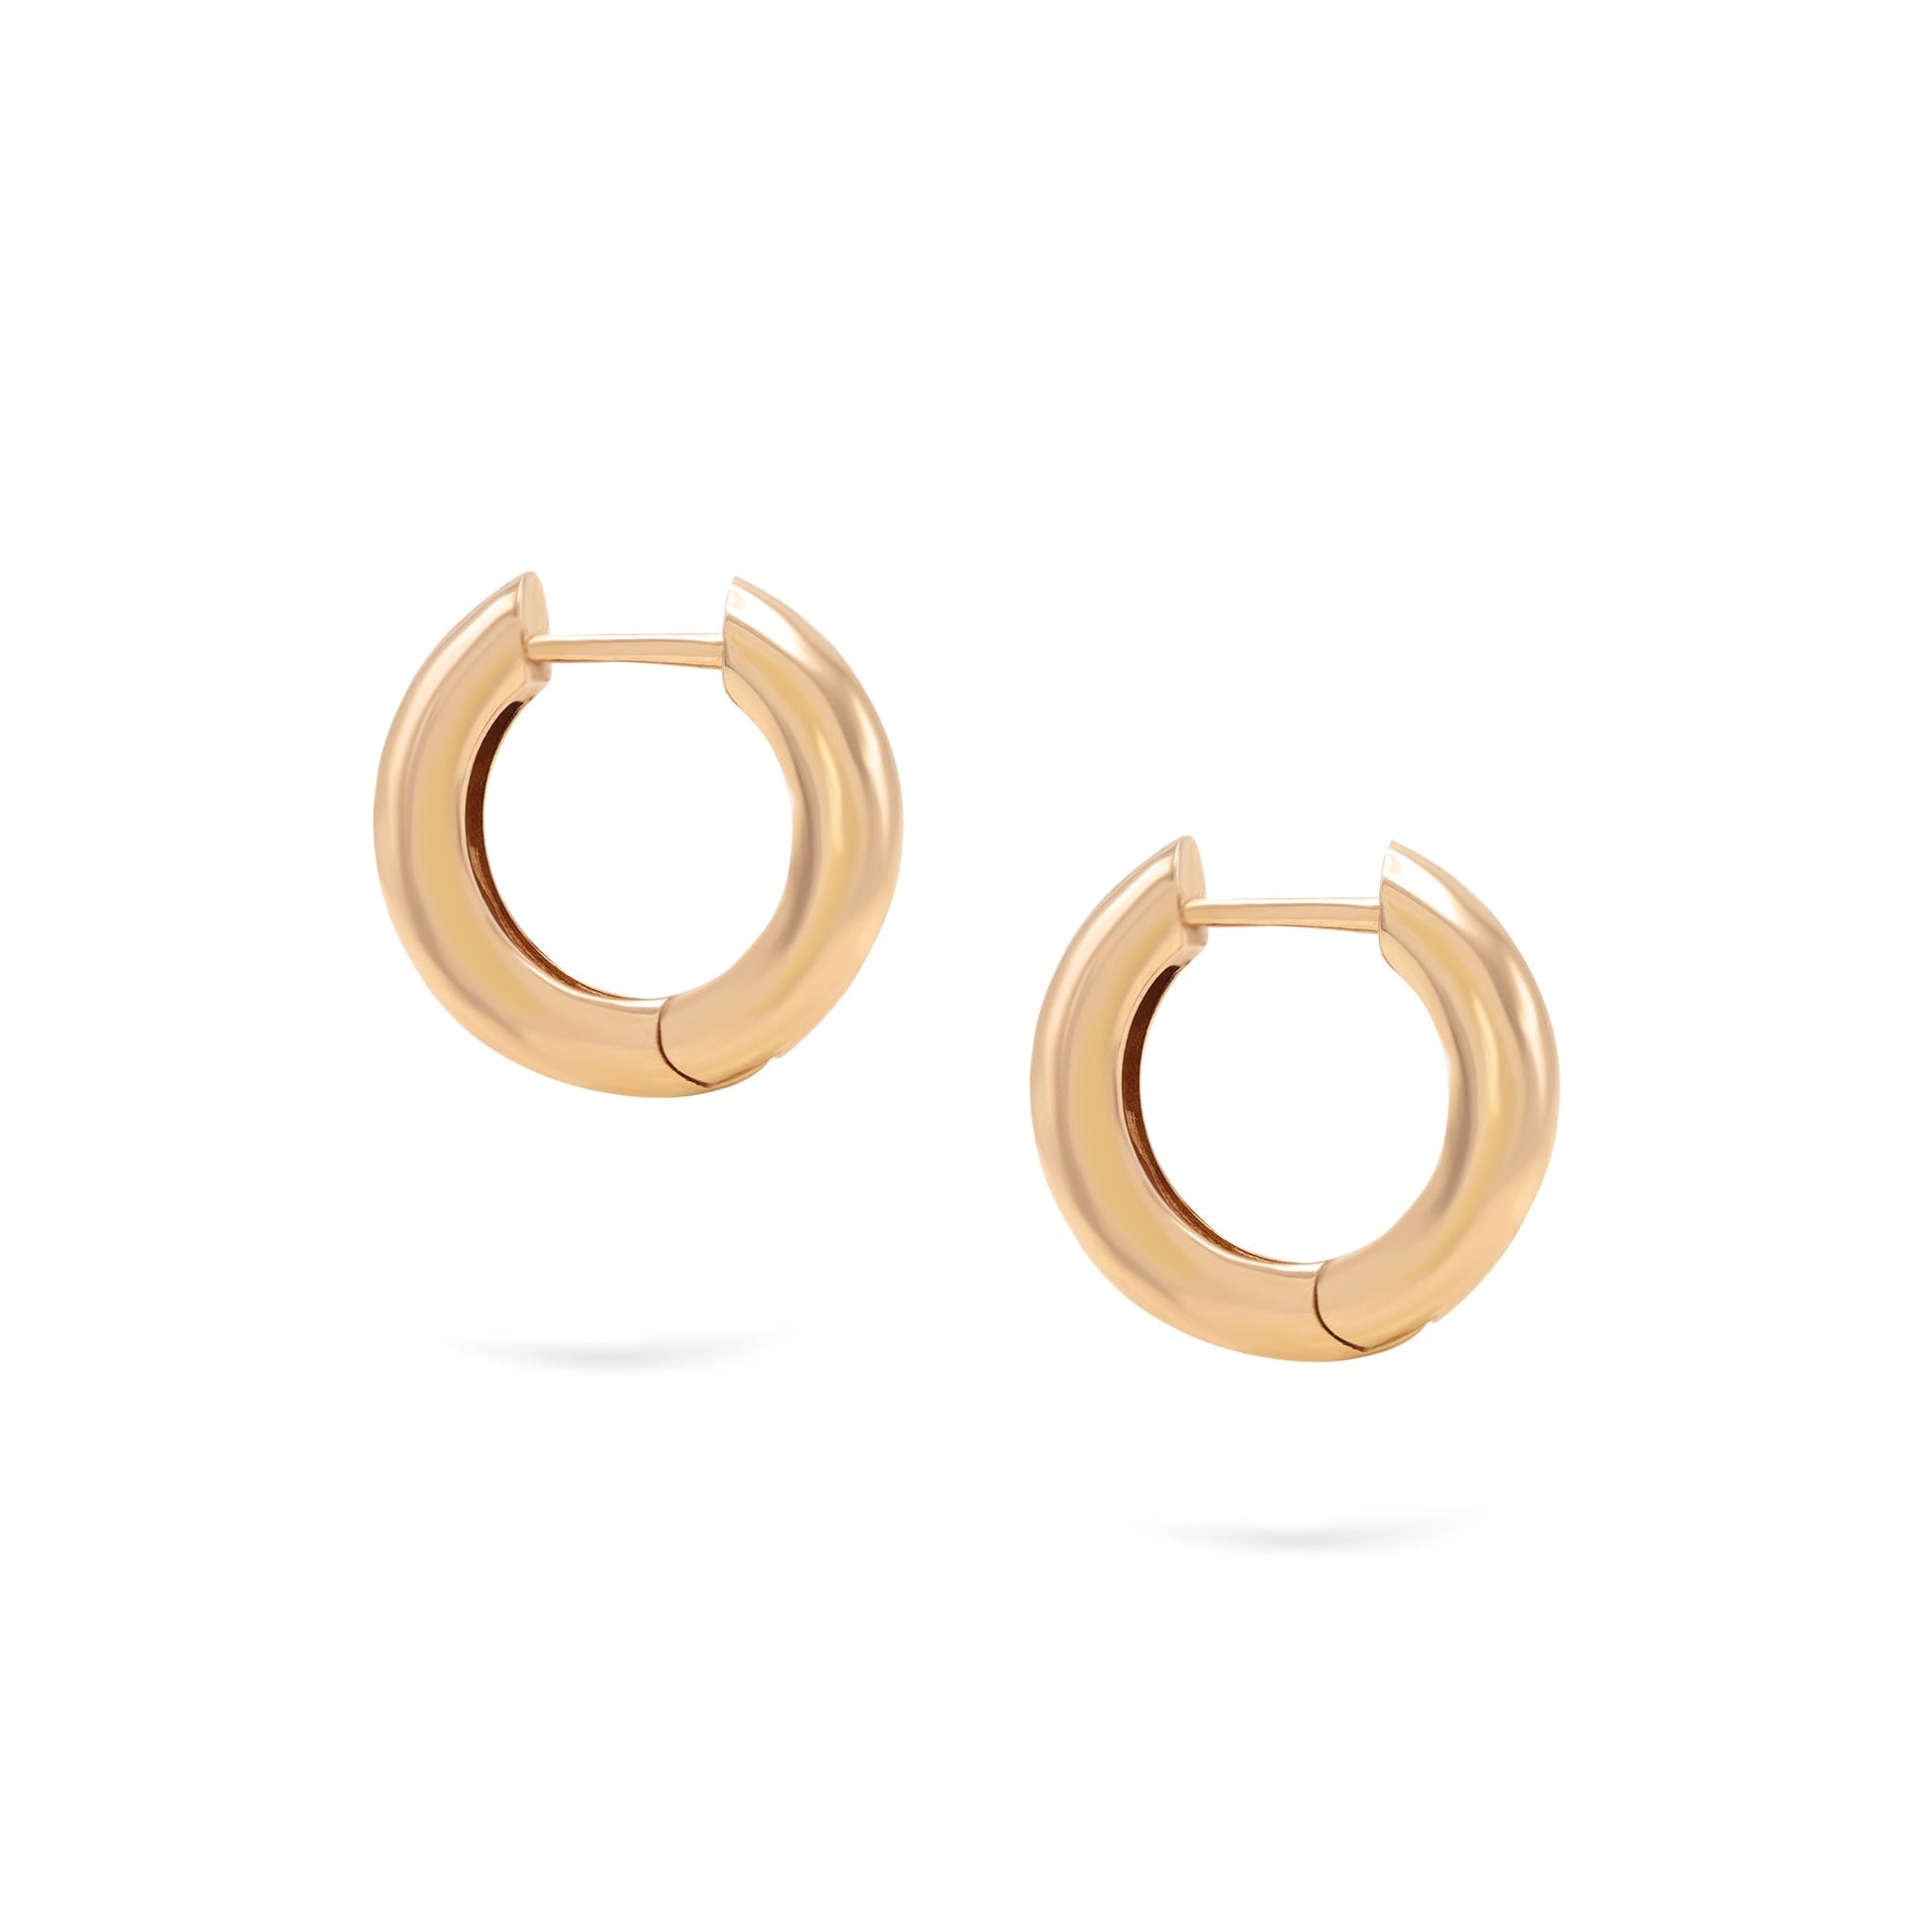 Jewelry Goldens Hoops | Medium Gold Earrings | 14K - earrings Zengoda Shop online from Artisan Brands